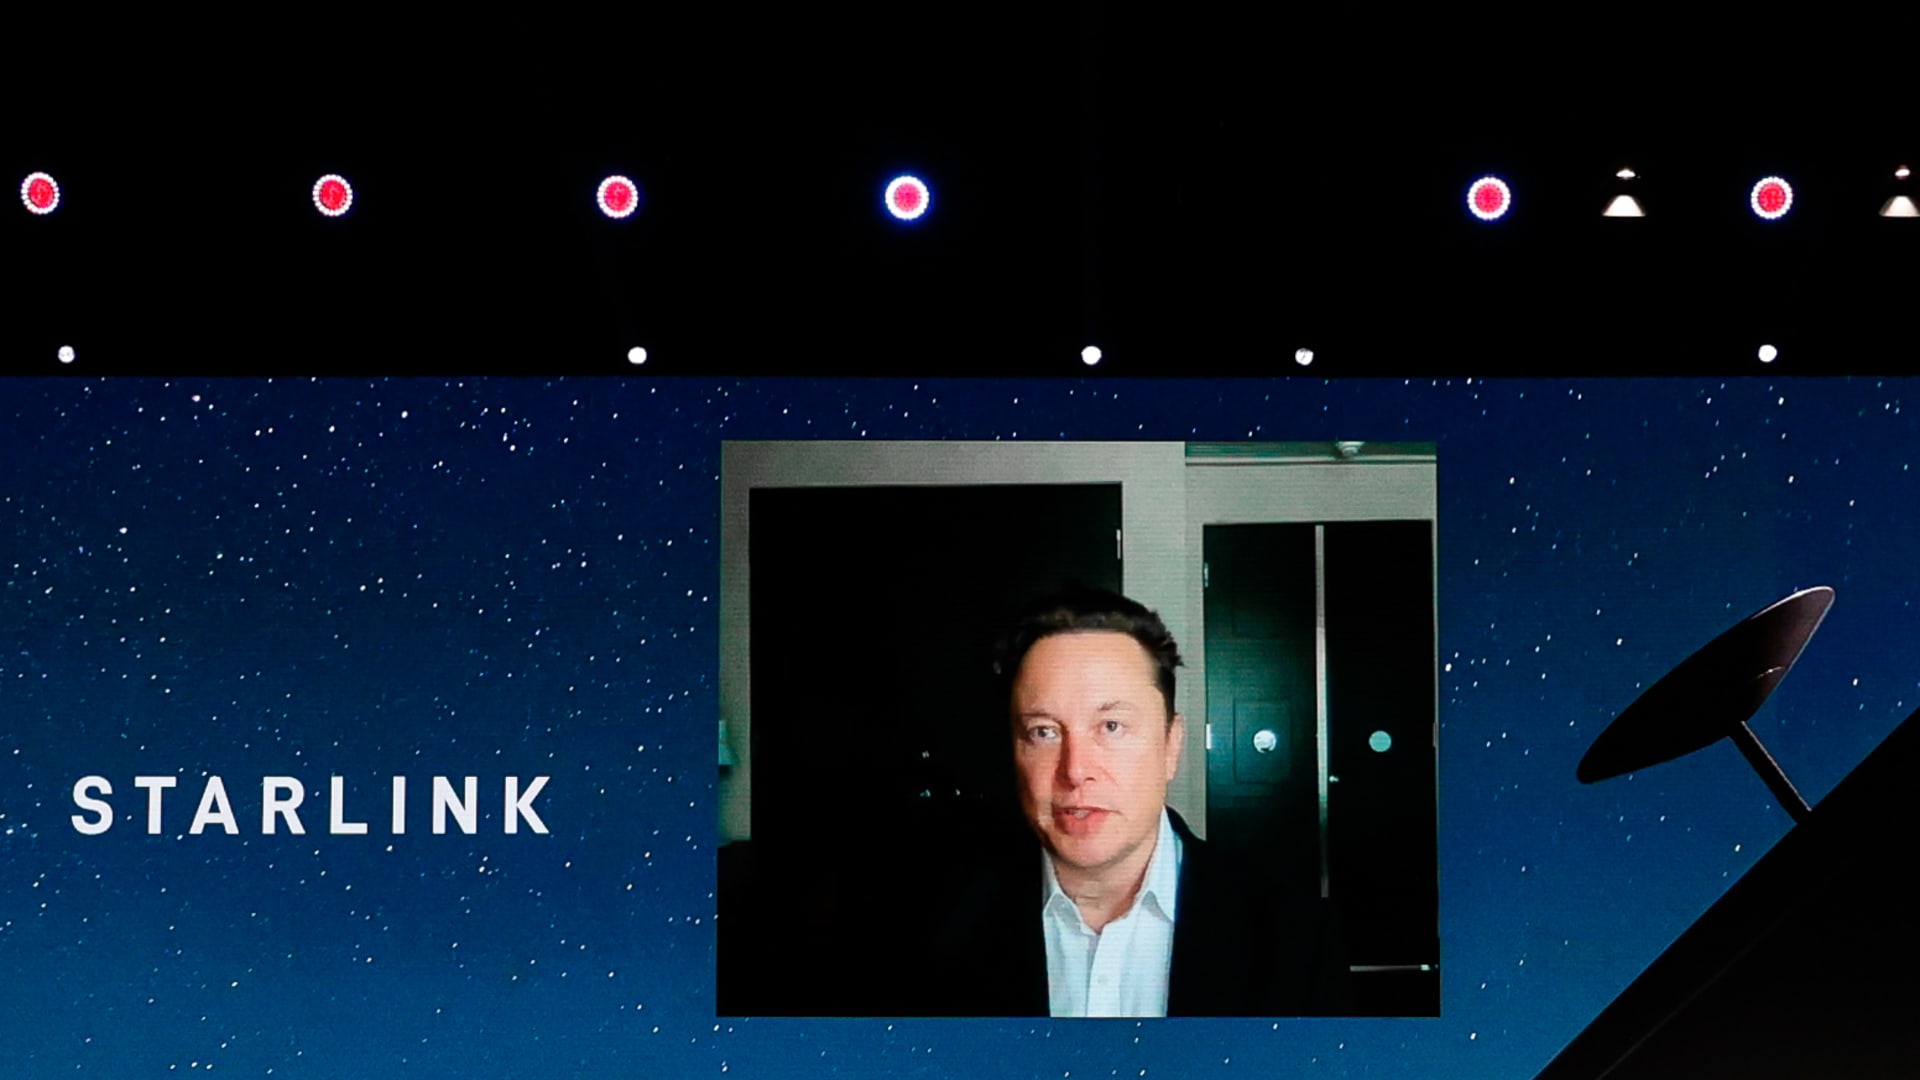 يضيف SpaceX قيودًا على البيانات إلى خدمة الإنترنت عبر الأقمار الصناعية Starlink